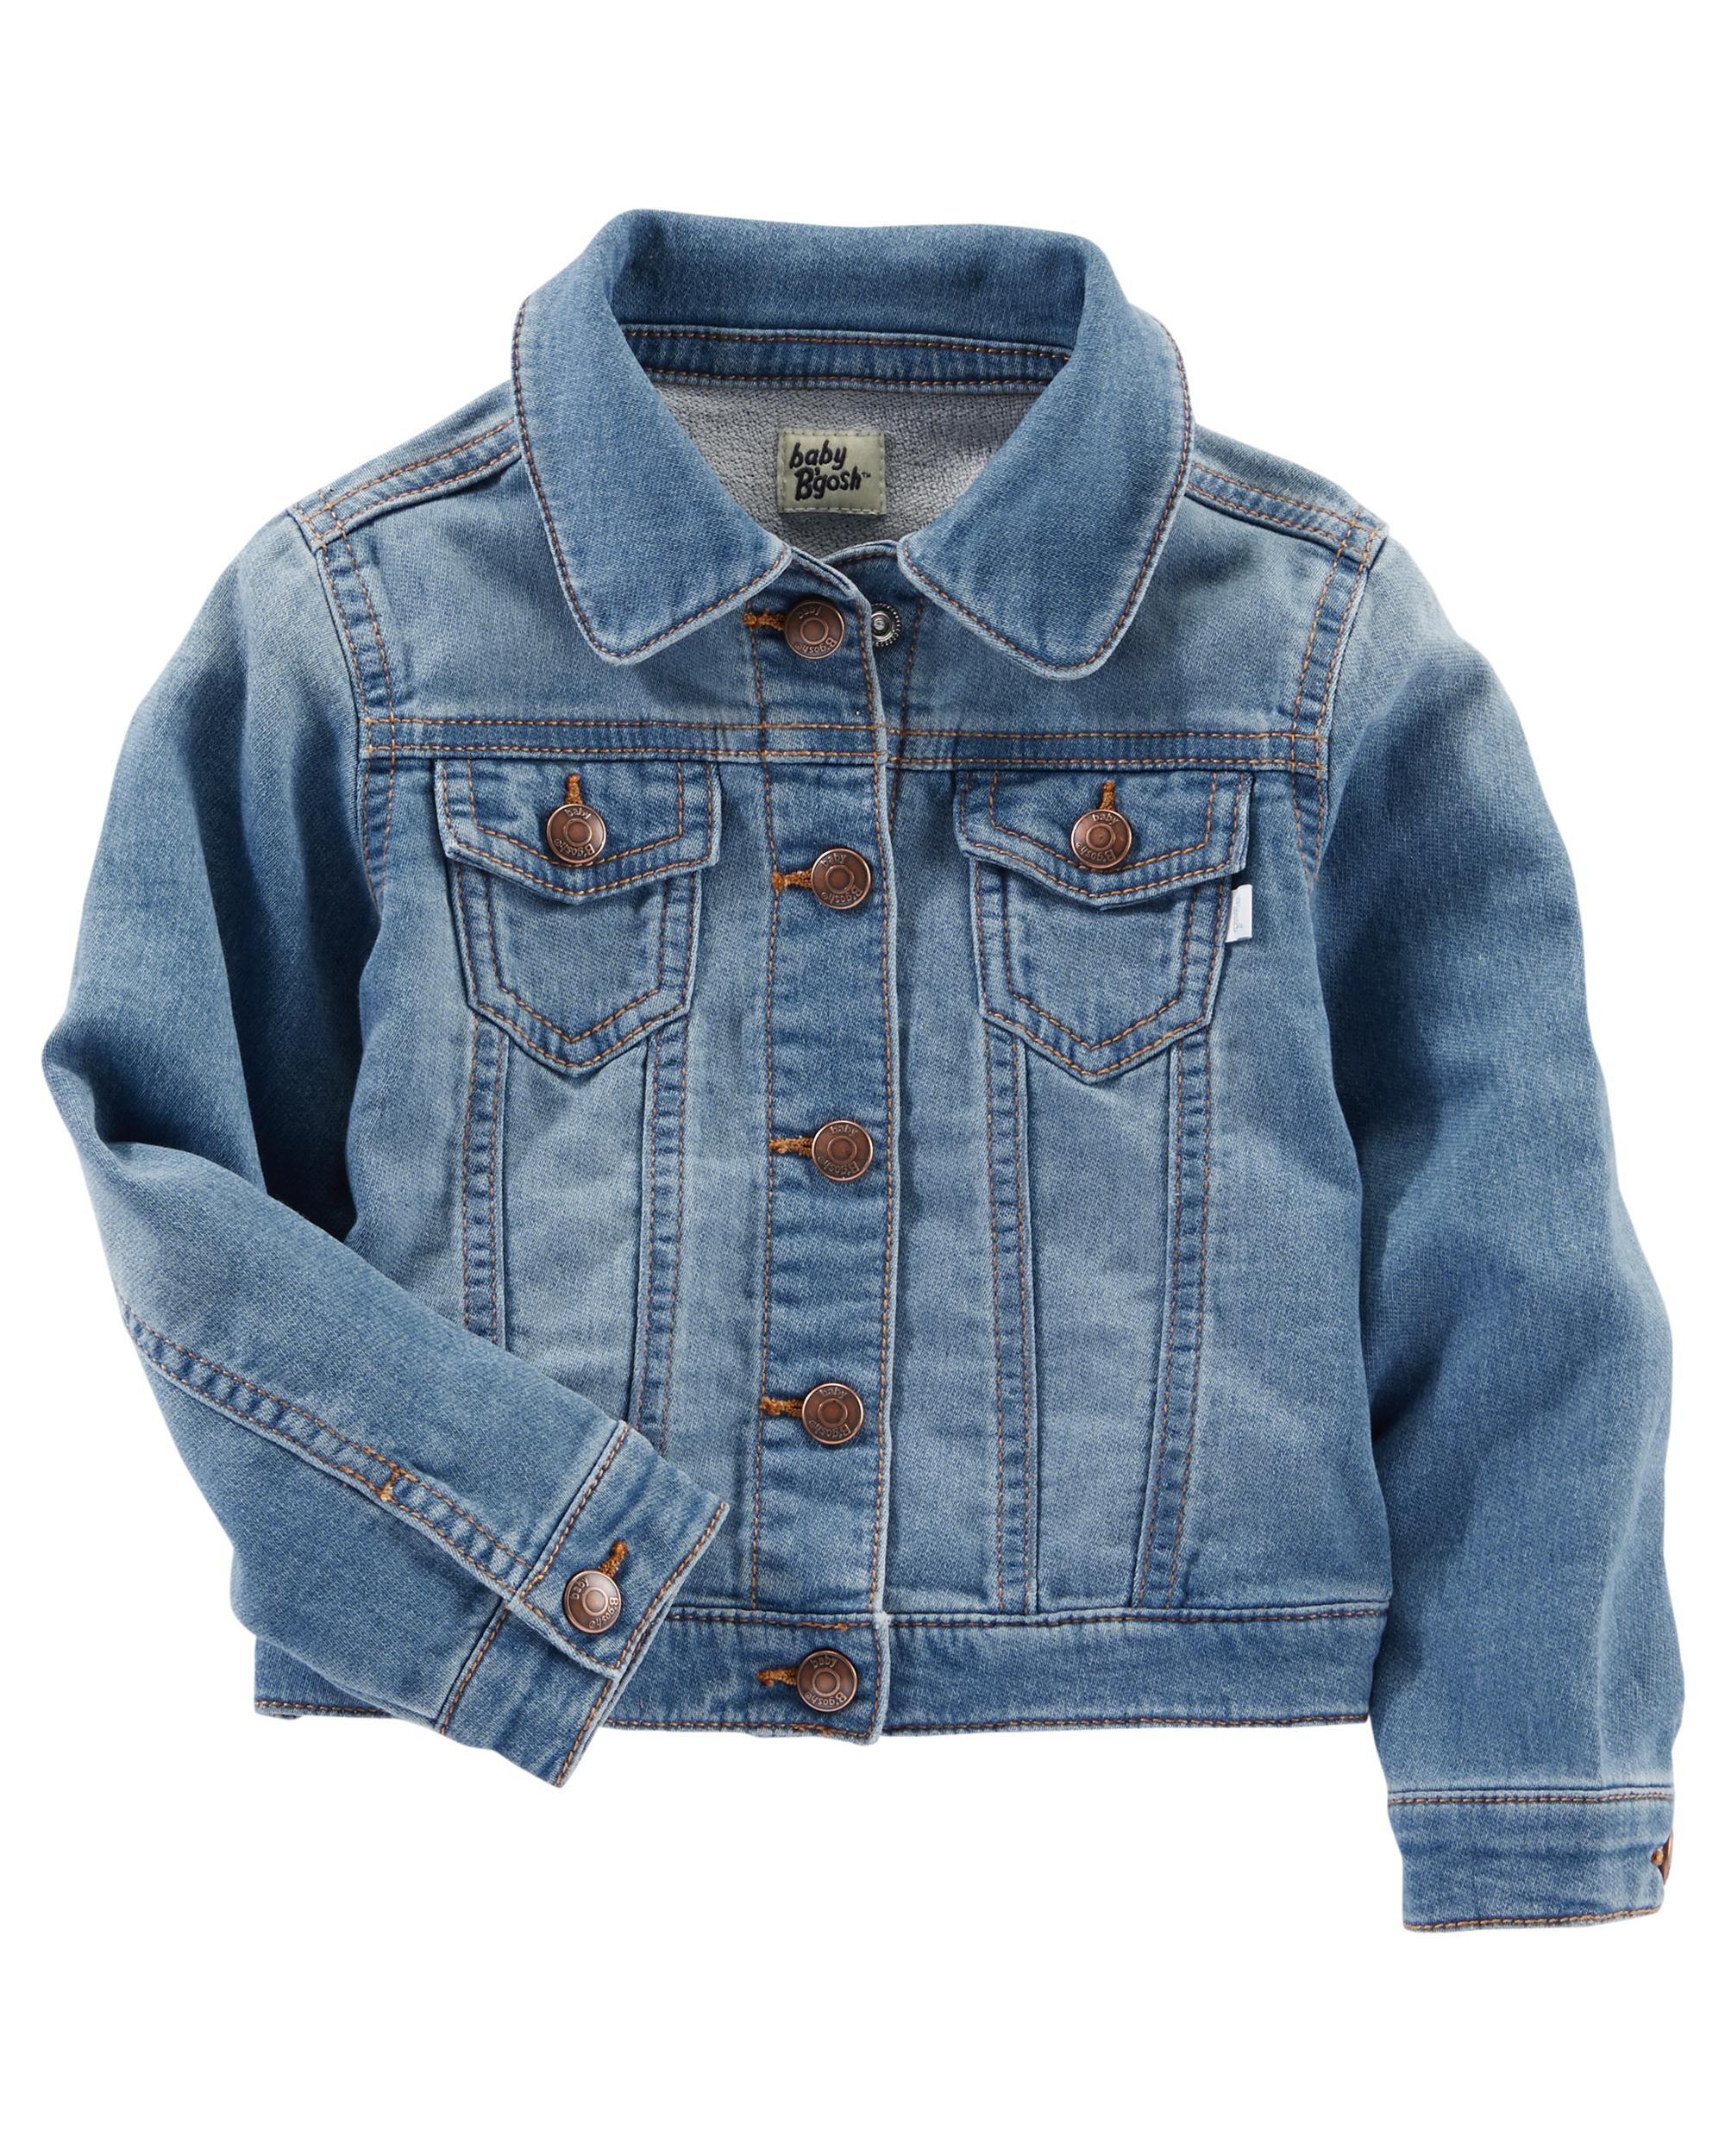 baby boy blue jean jacket